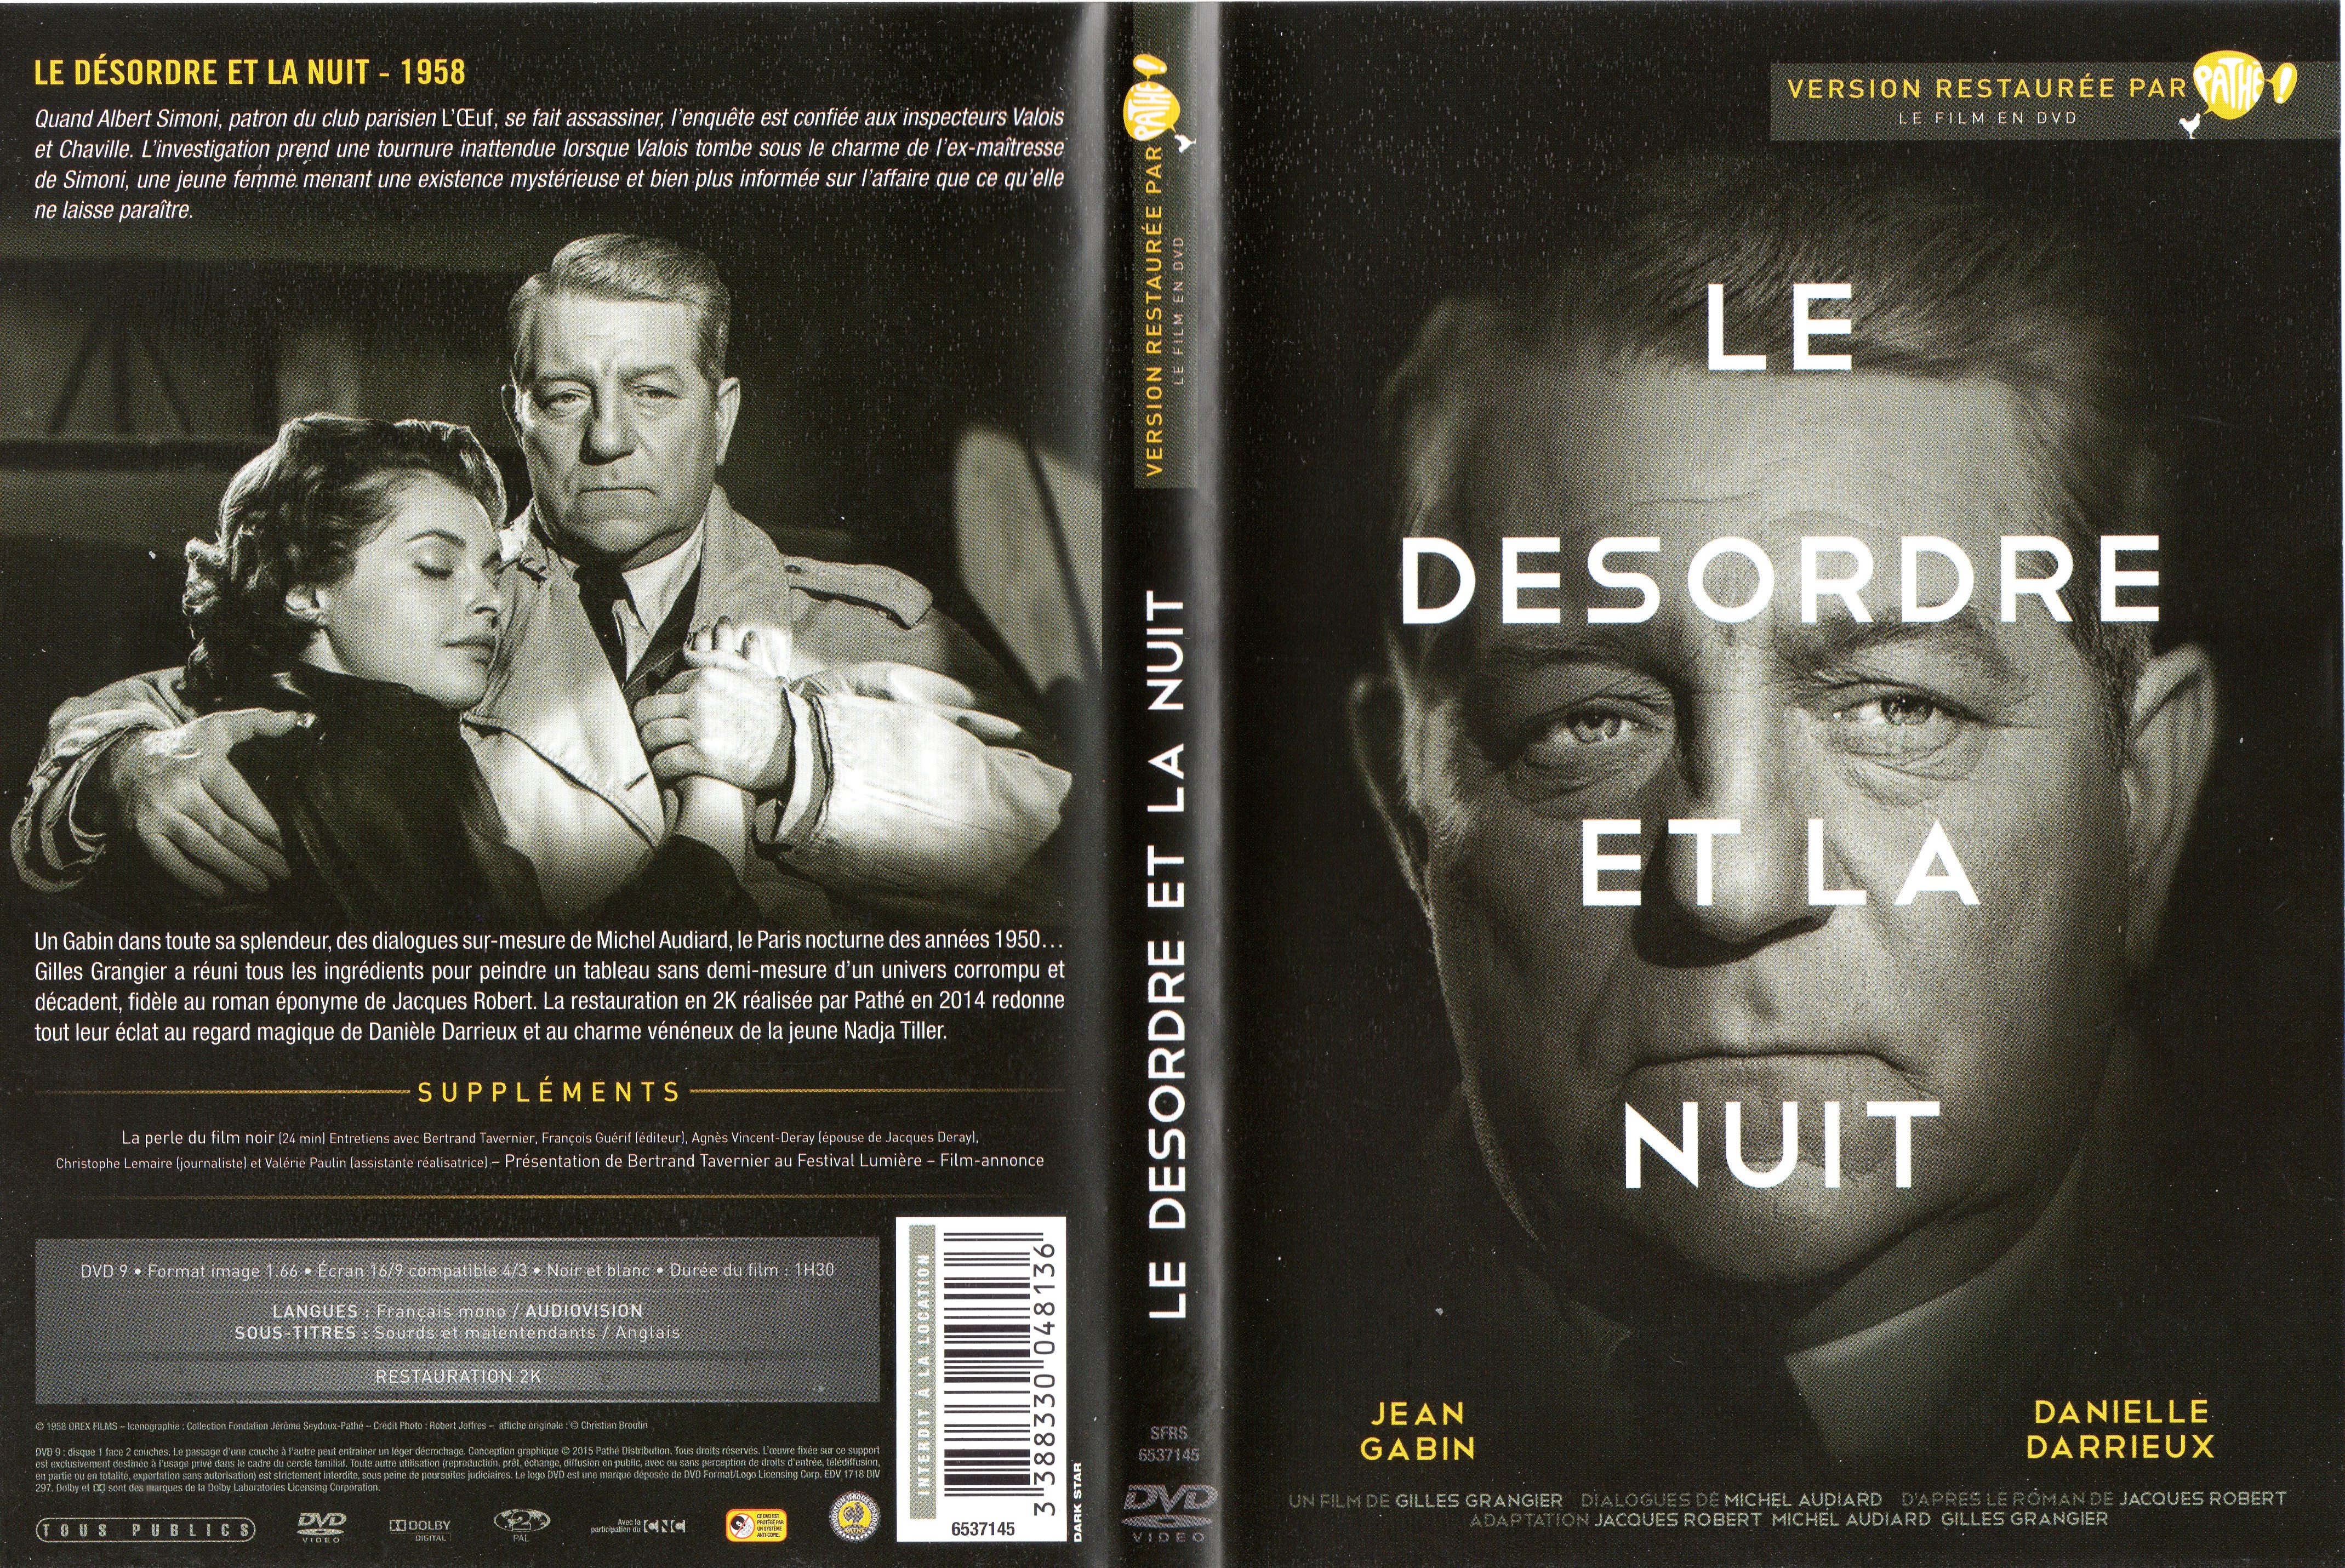 Jaquette DVD Le dsordre et la nuit v3